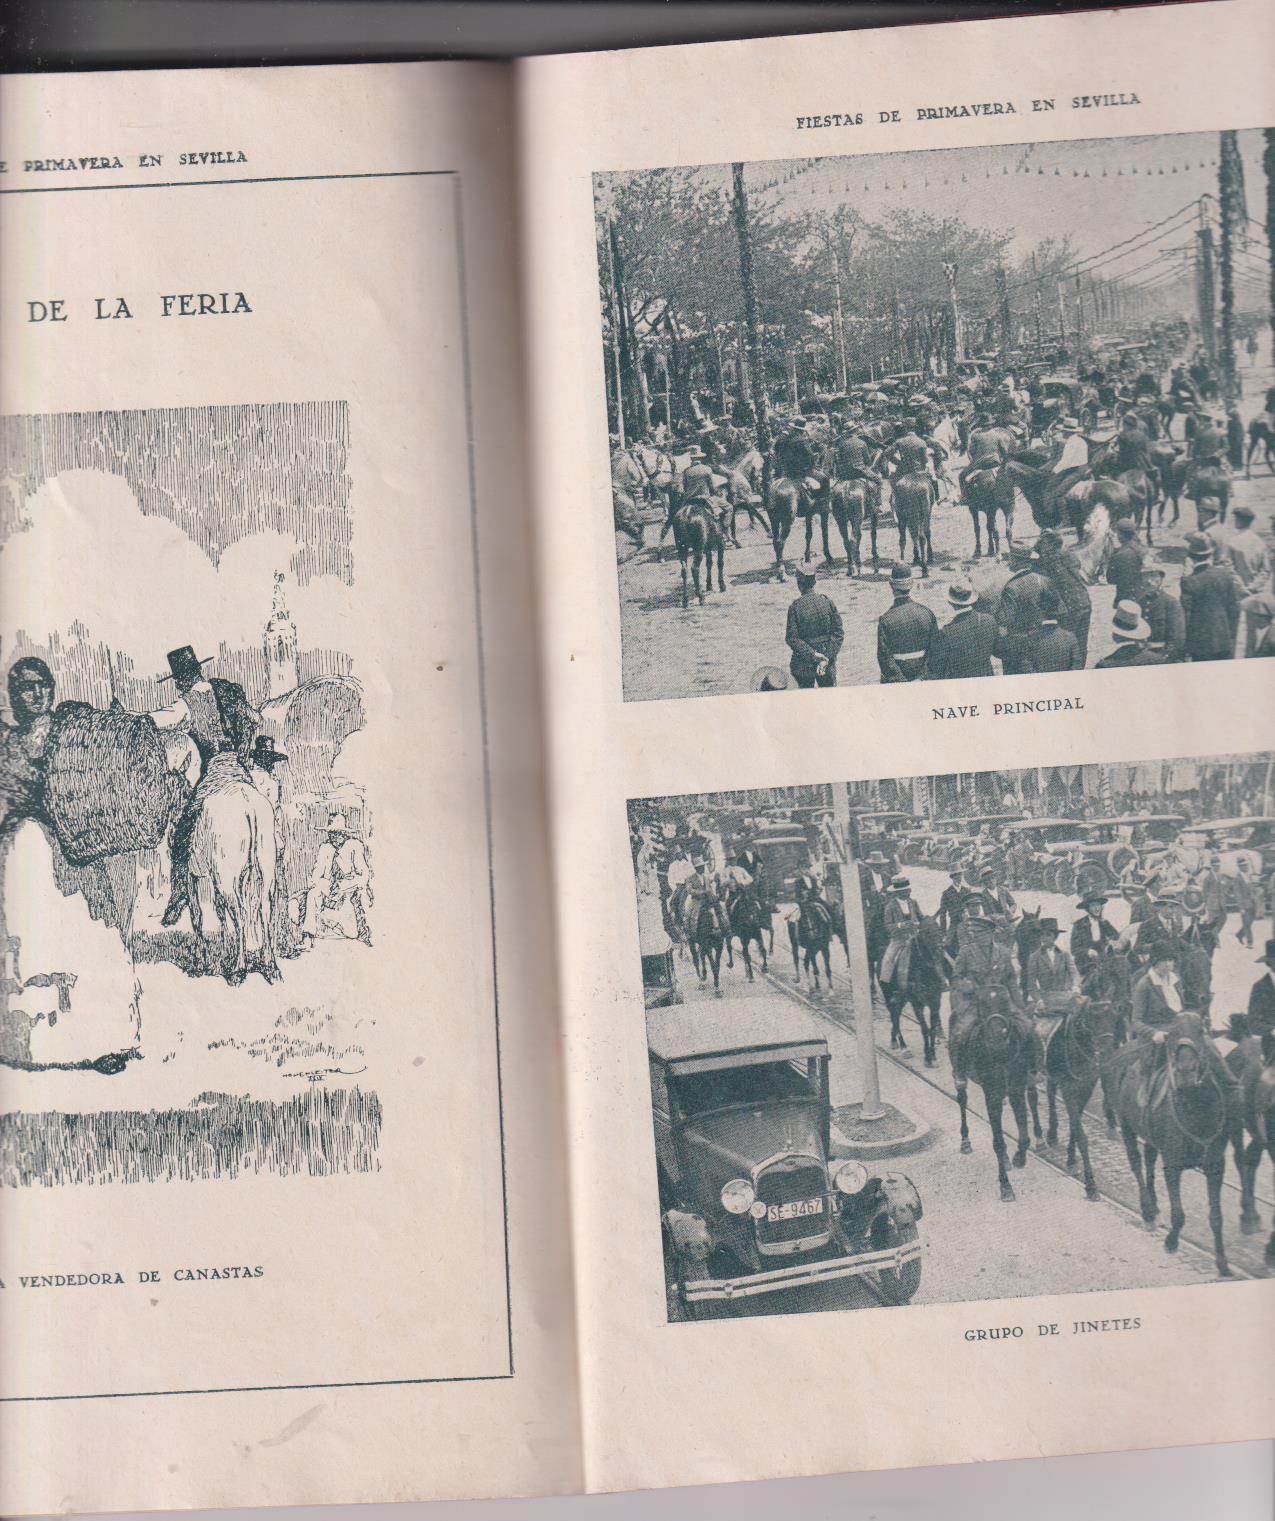 Fiestas de Primavera en Sevilla 1935. Obsequio de Almacenes Ciudad de Sevilla